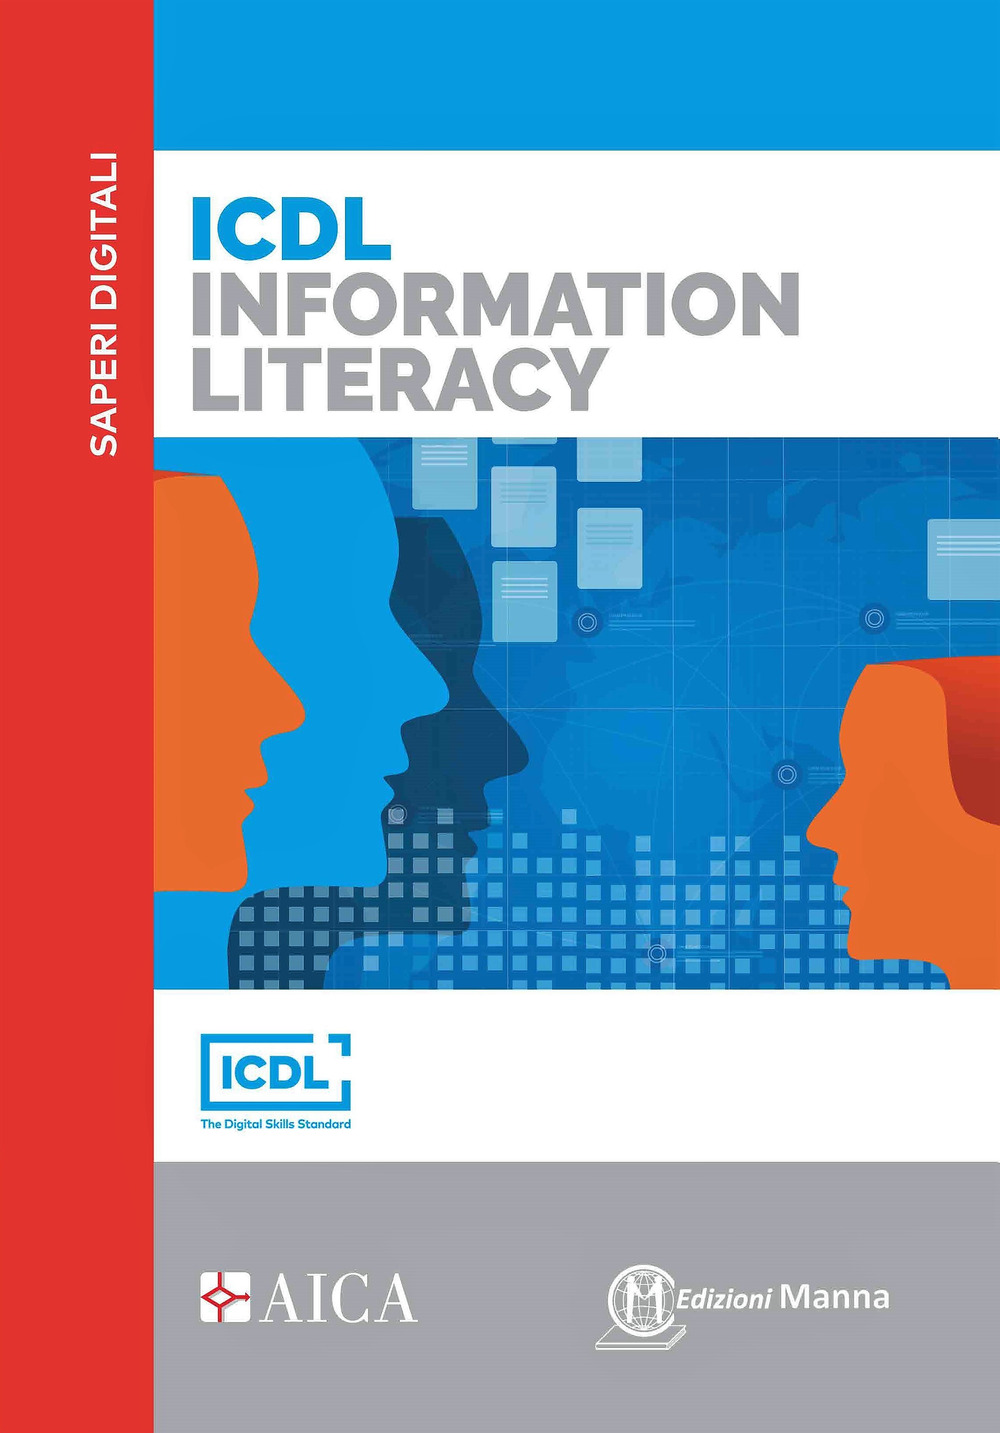 Libri Storchi Mario R. - ICDL Information Literacy NUOVO SIGILLATO, EDIZIONE DEL 19/05/2022 SUBITO DISPONIBILE